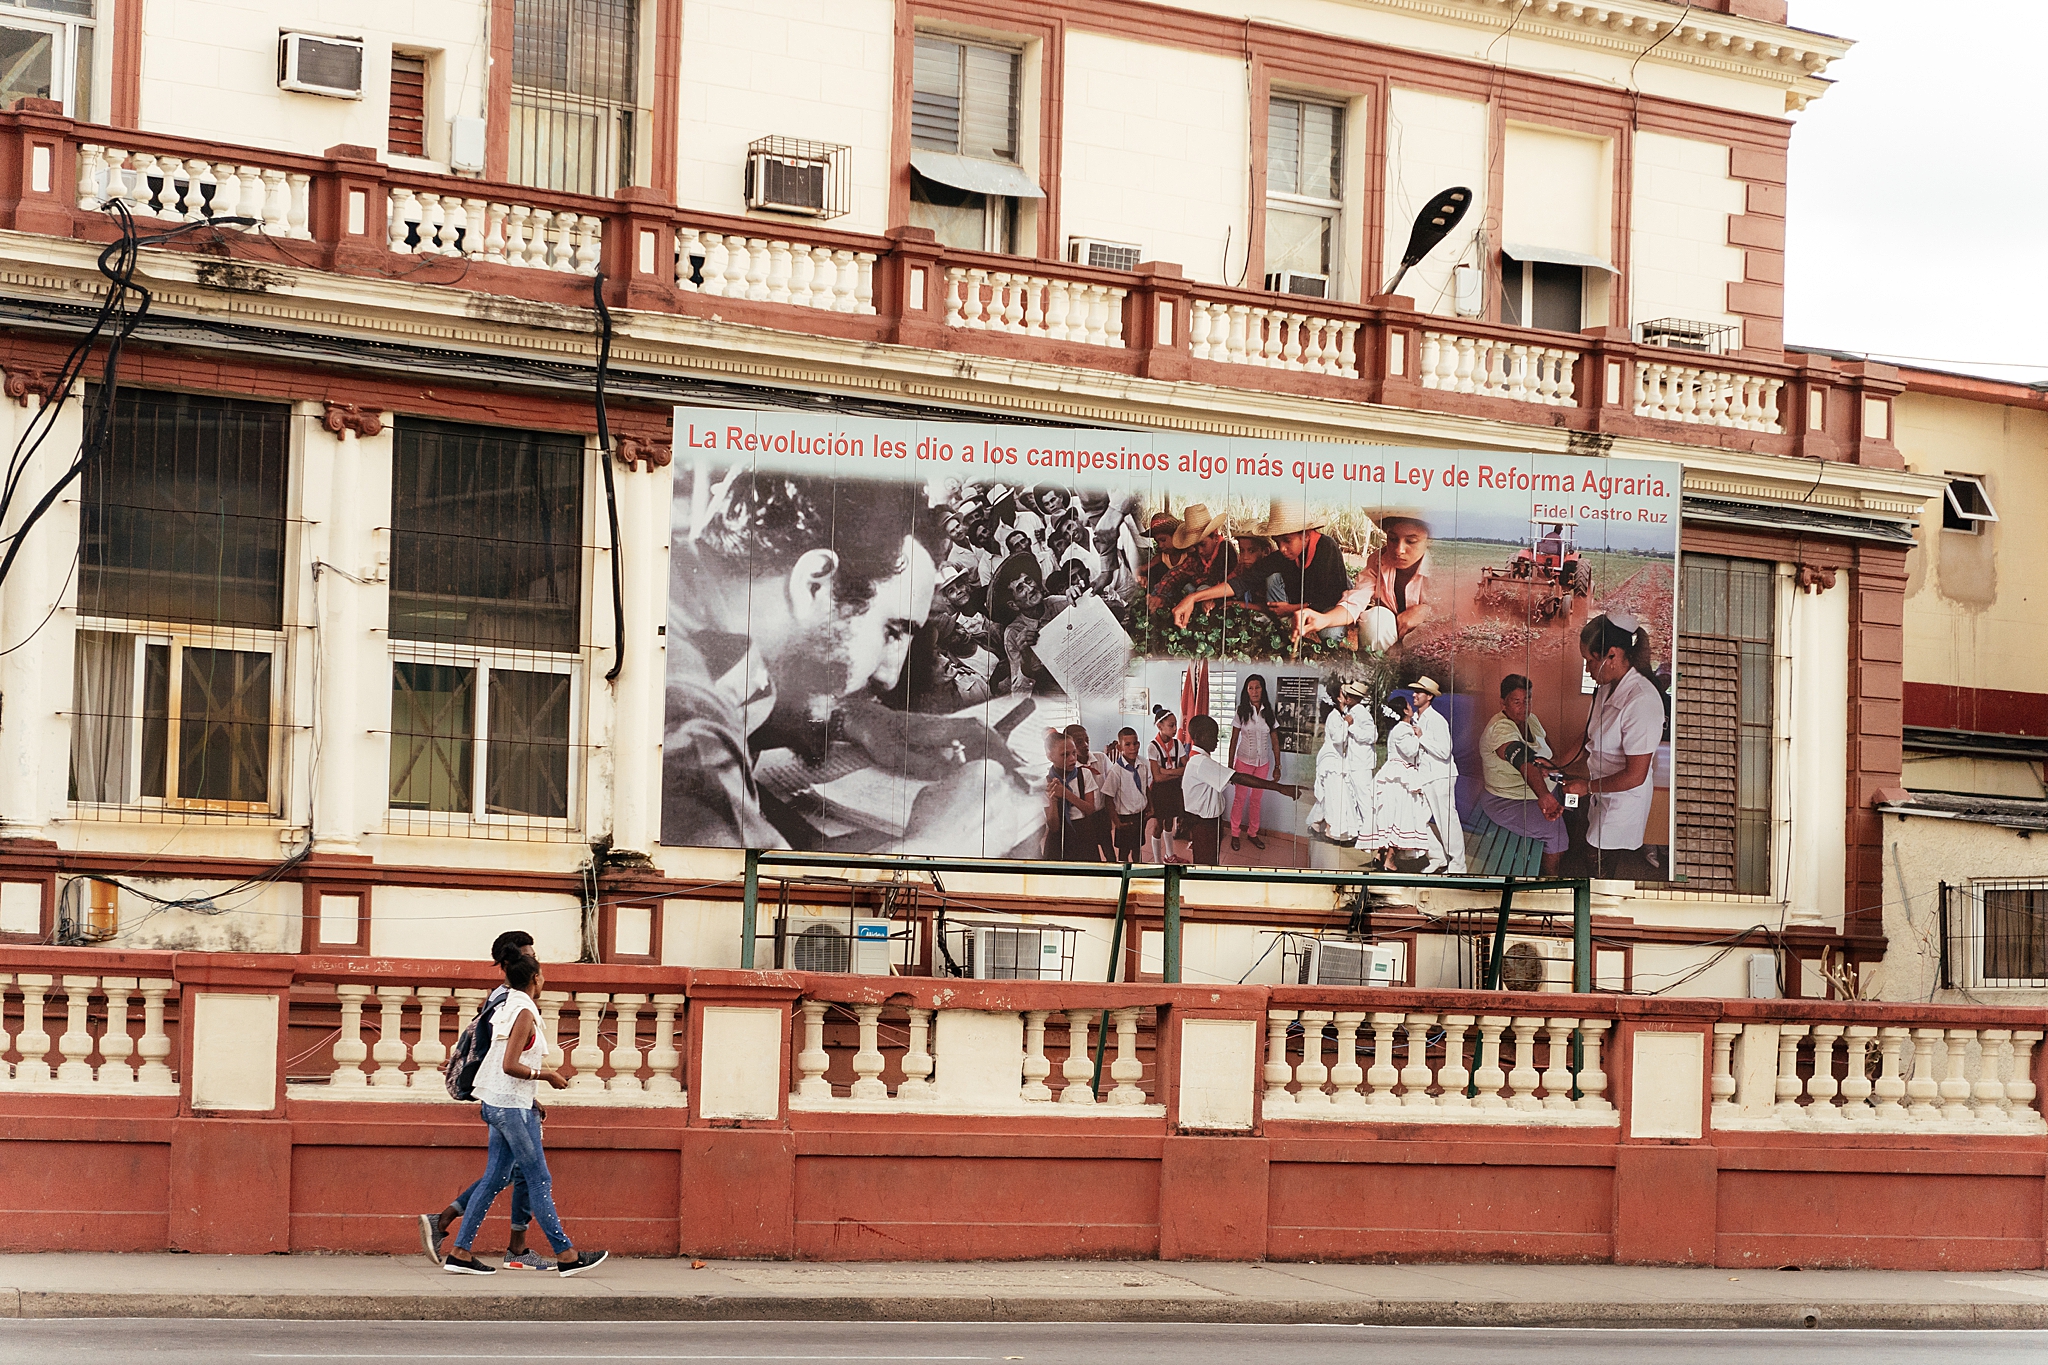  Vintage political propaganda in Havana, Cuba. 